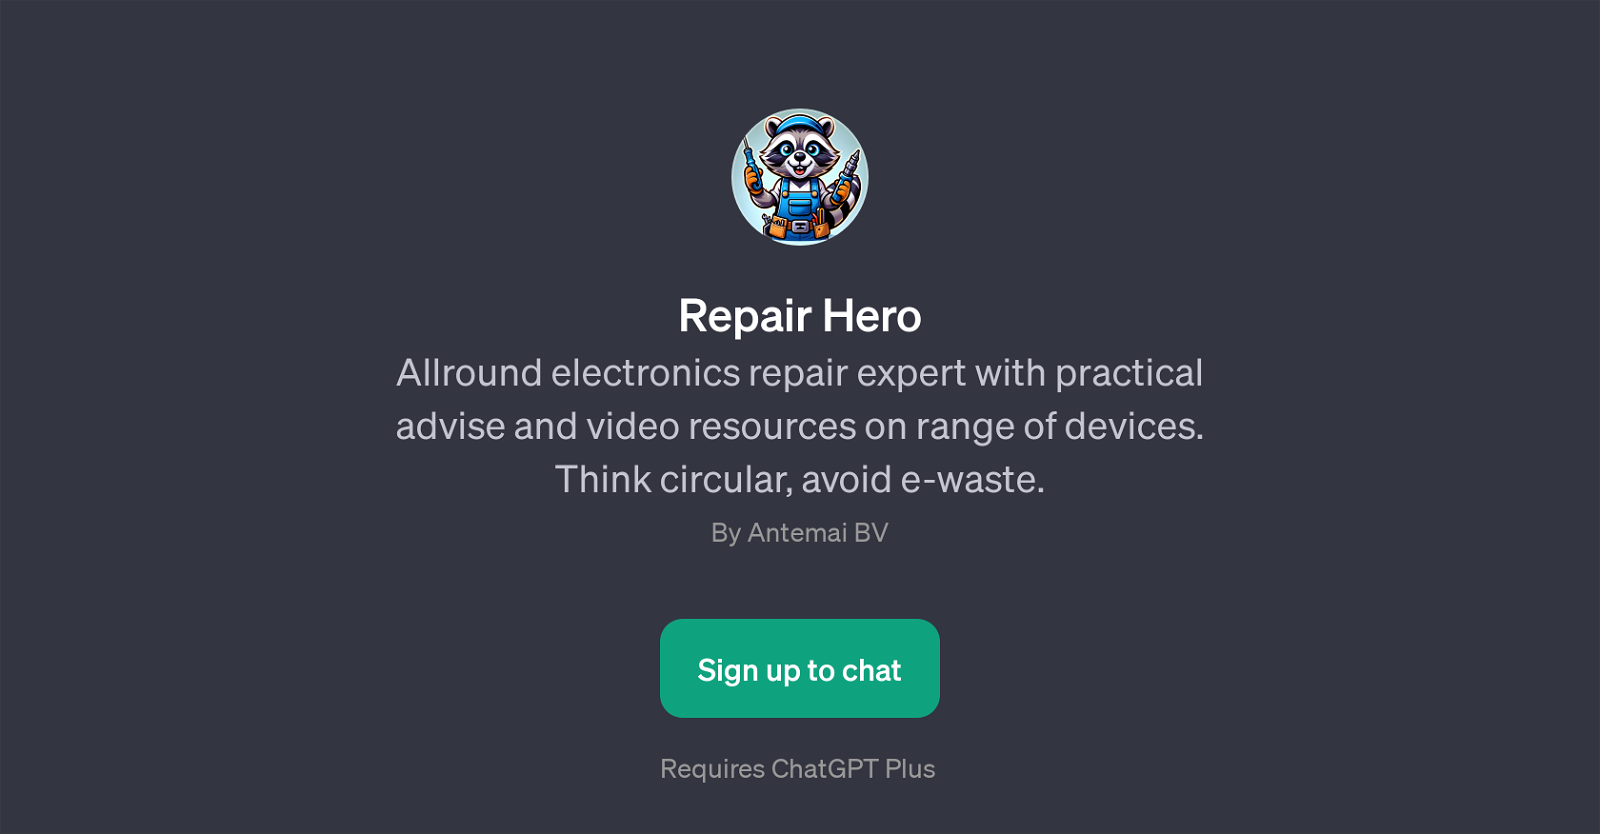 Repair Hero website